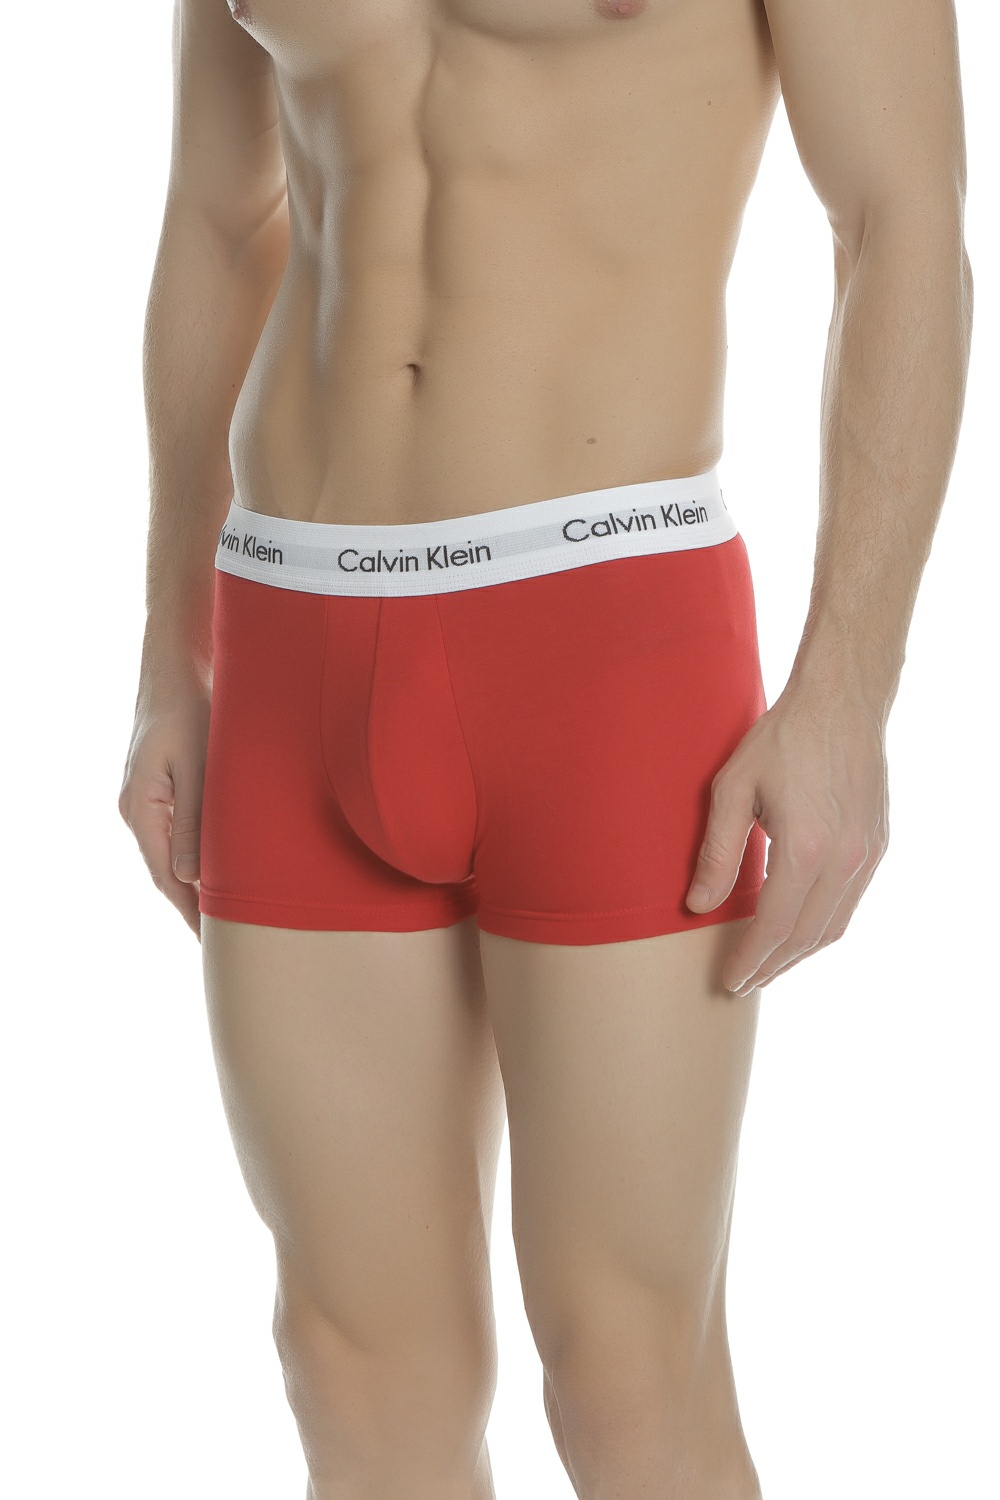 CK UNDERWEAR – Σετ ανδρικά εσώρουχα μπόξερ Calvin Klein Underwear LOW μπλε – κόκκινα – λευκά 1398742.0-7145